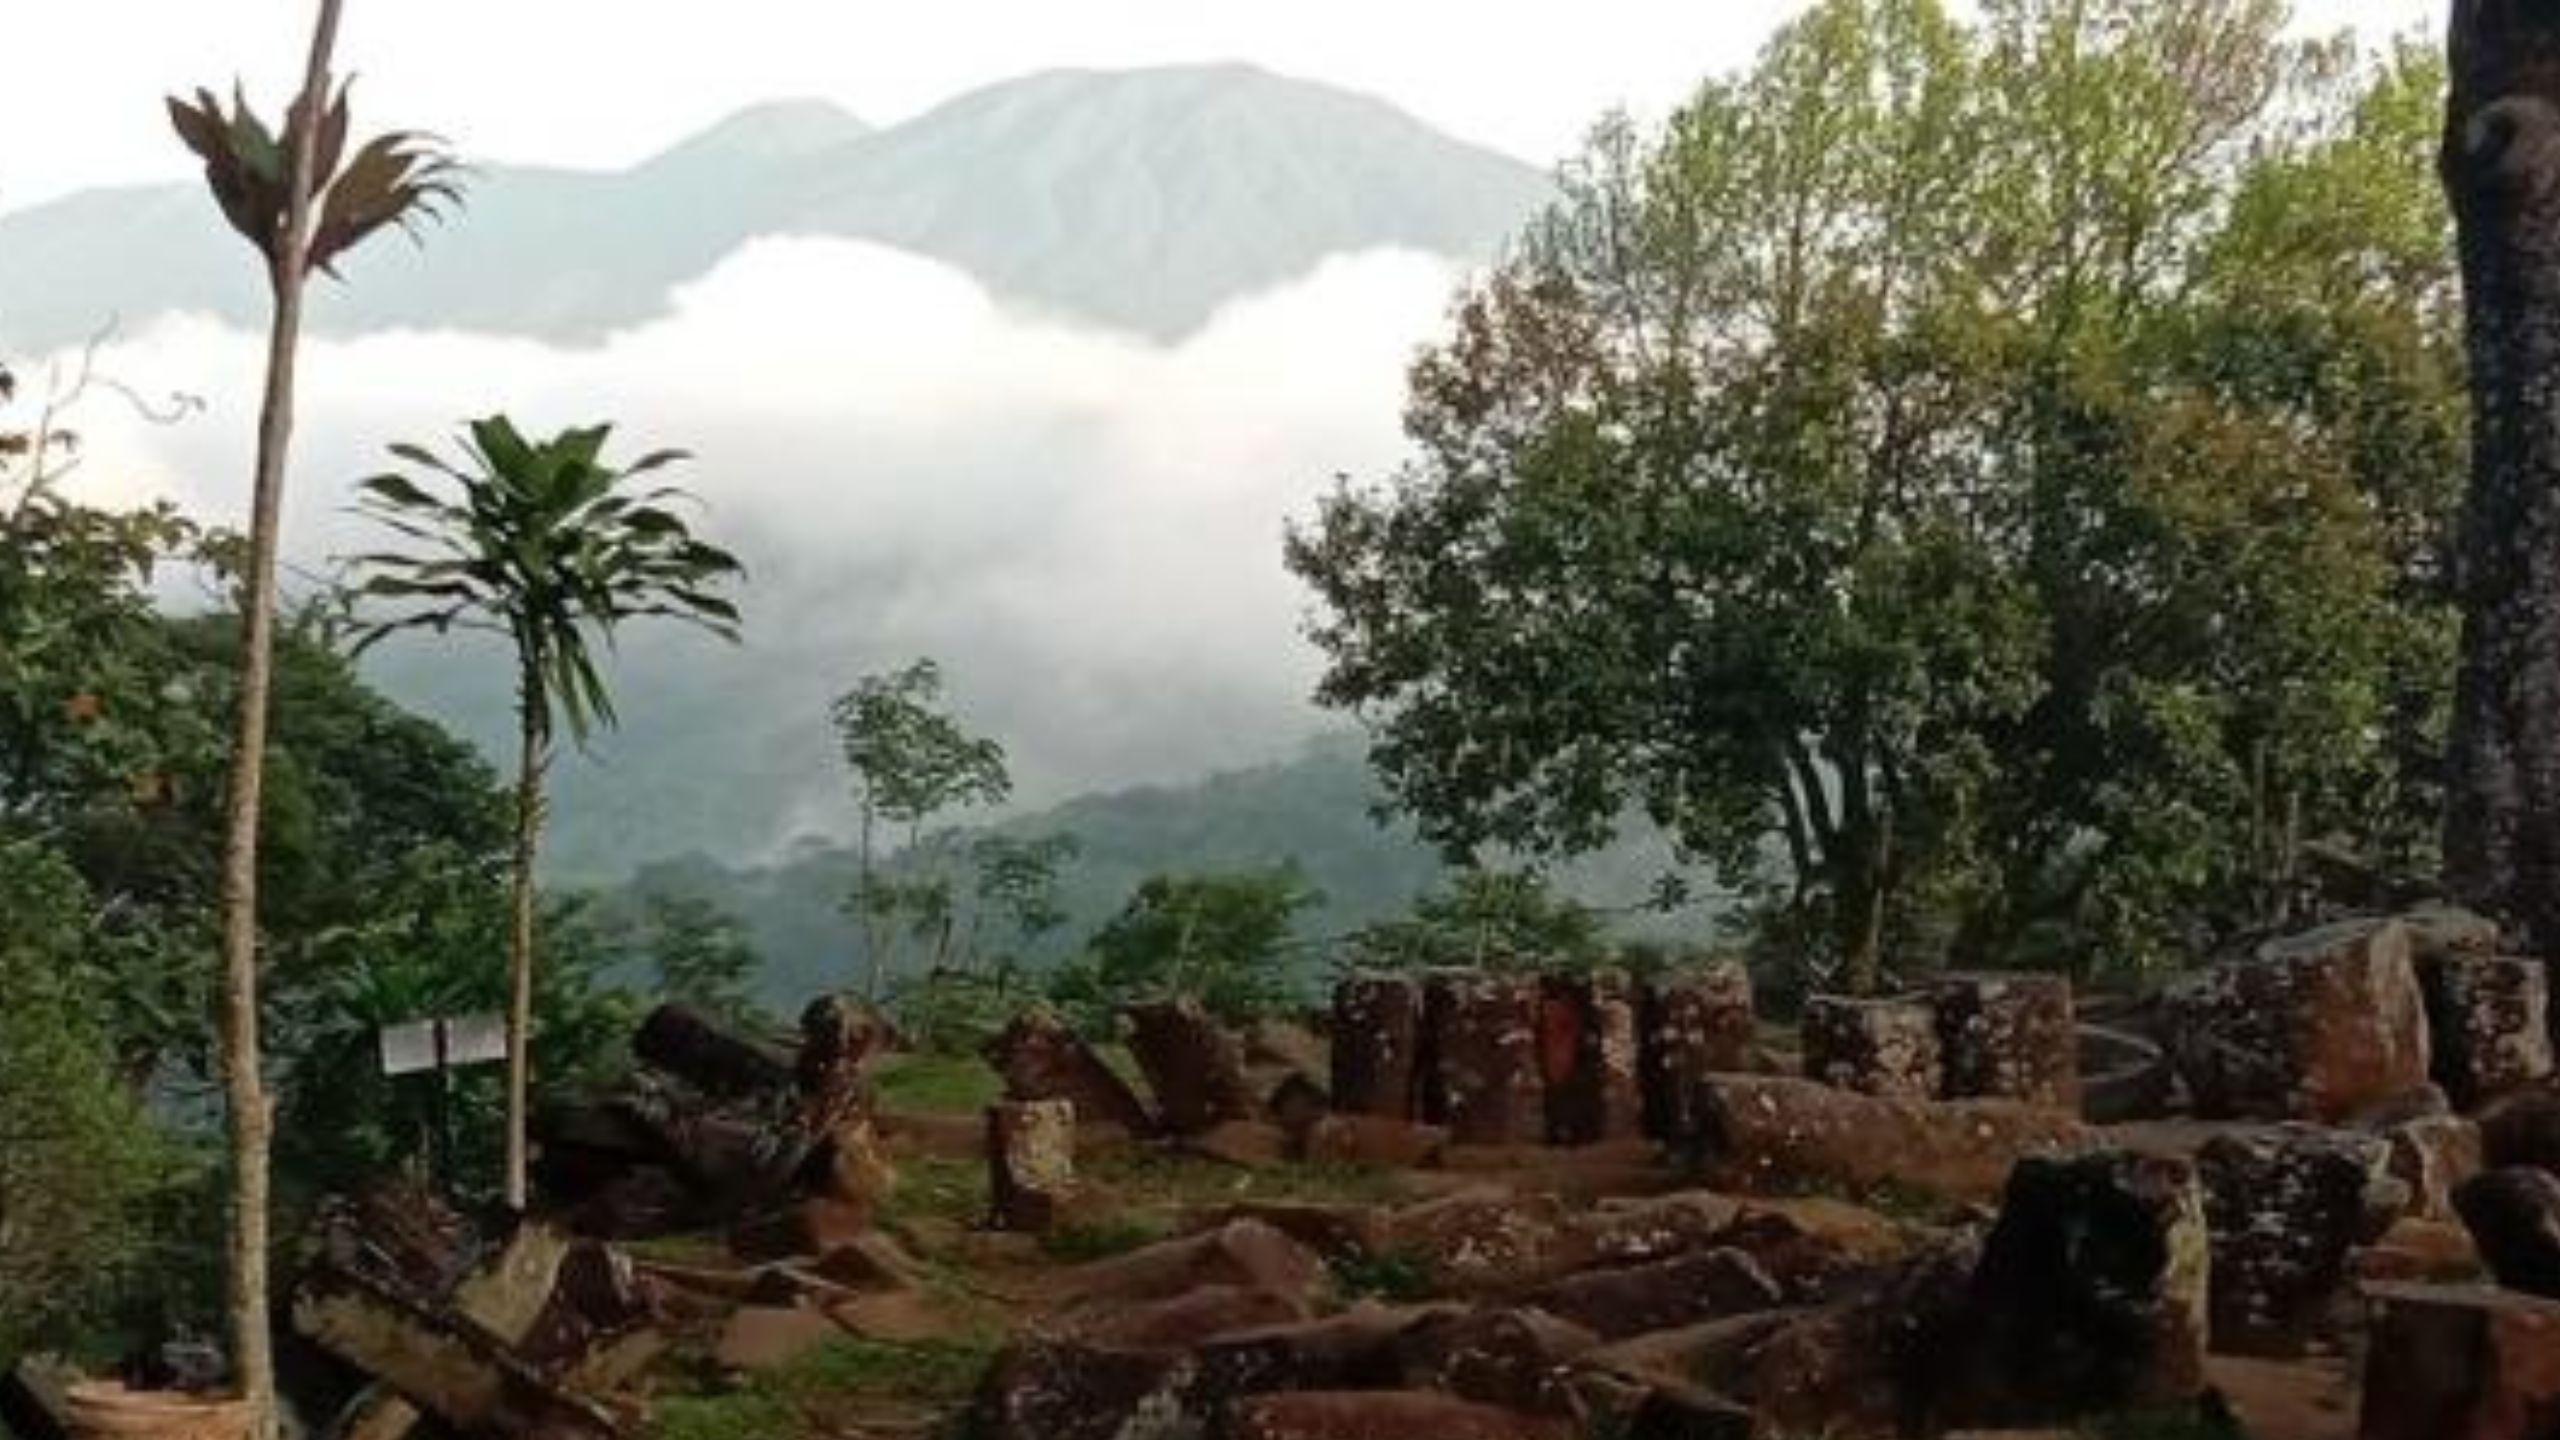 Situs Gunung Padang, Jejak Spiritual dan Pesan Tanda Akhir Zaman